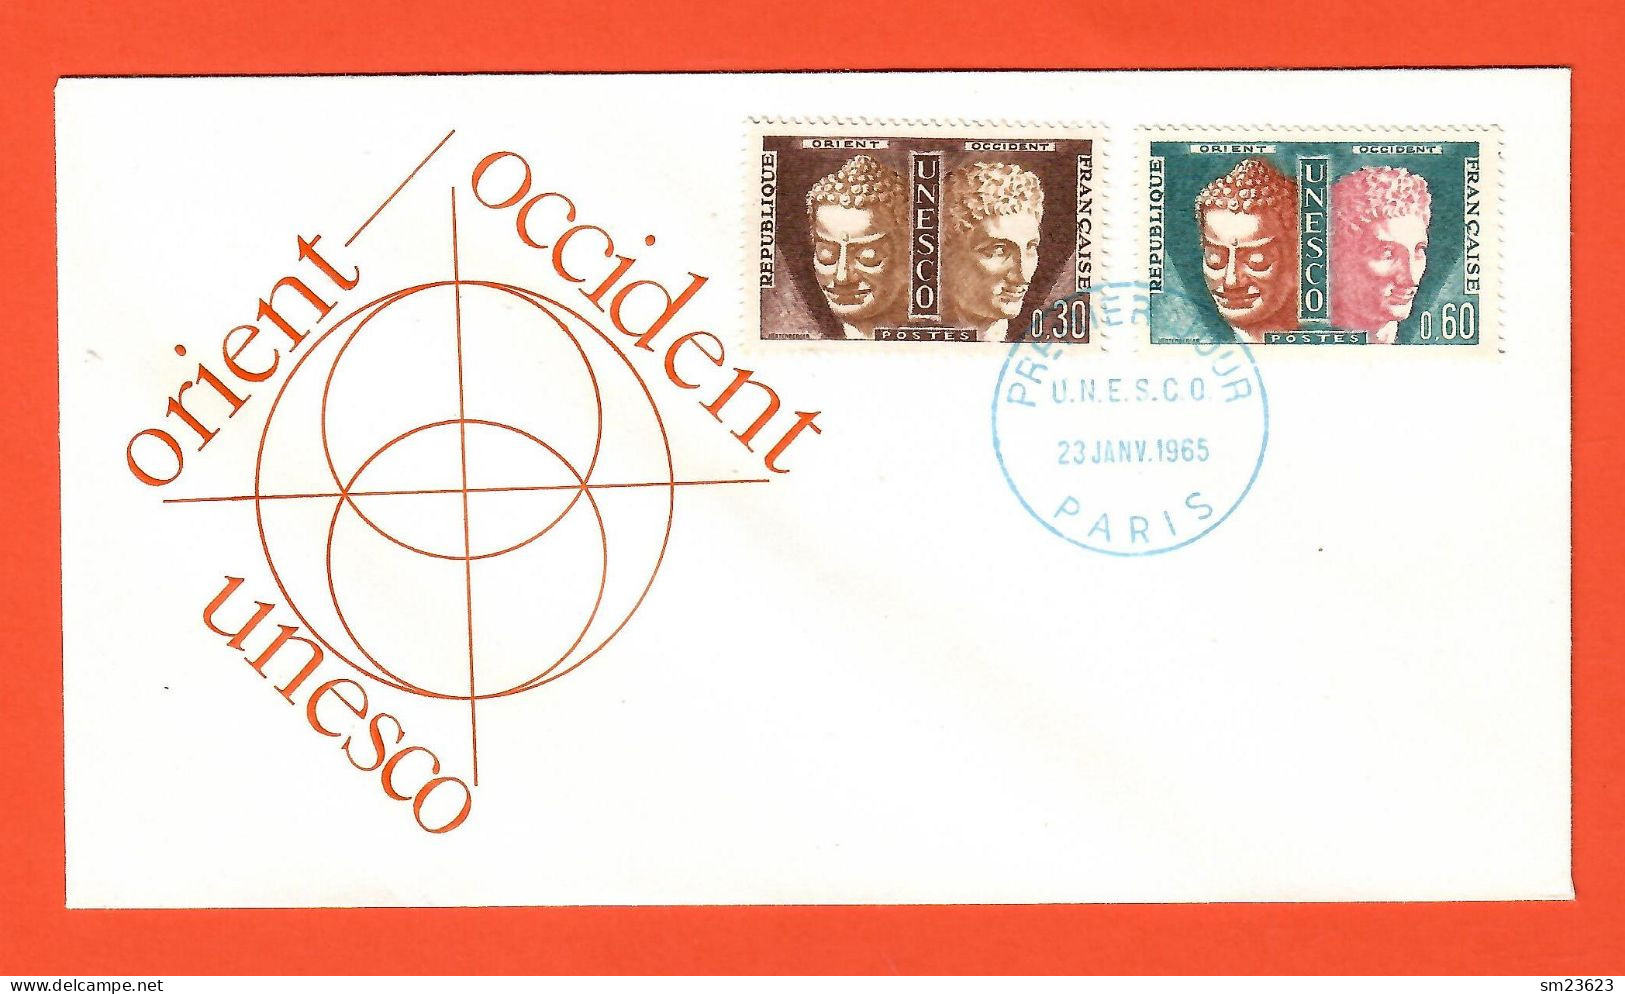 Frankreich 1965   Mi.Nr. 4+5 , Dienstmarken Für Die UNESCO - FDC Premier Jour 23. JANV.1965 PARIS - Covers & Documents